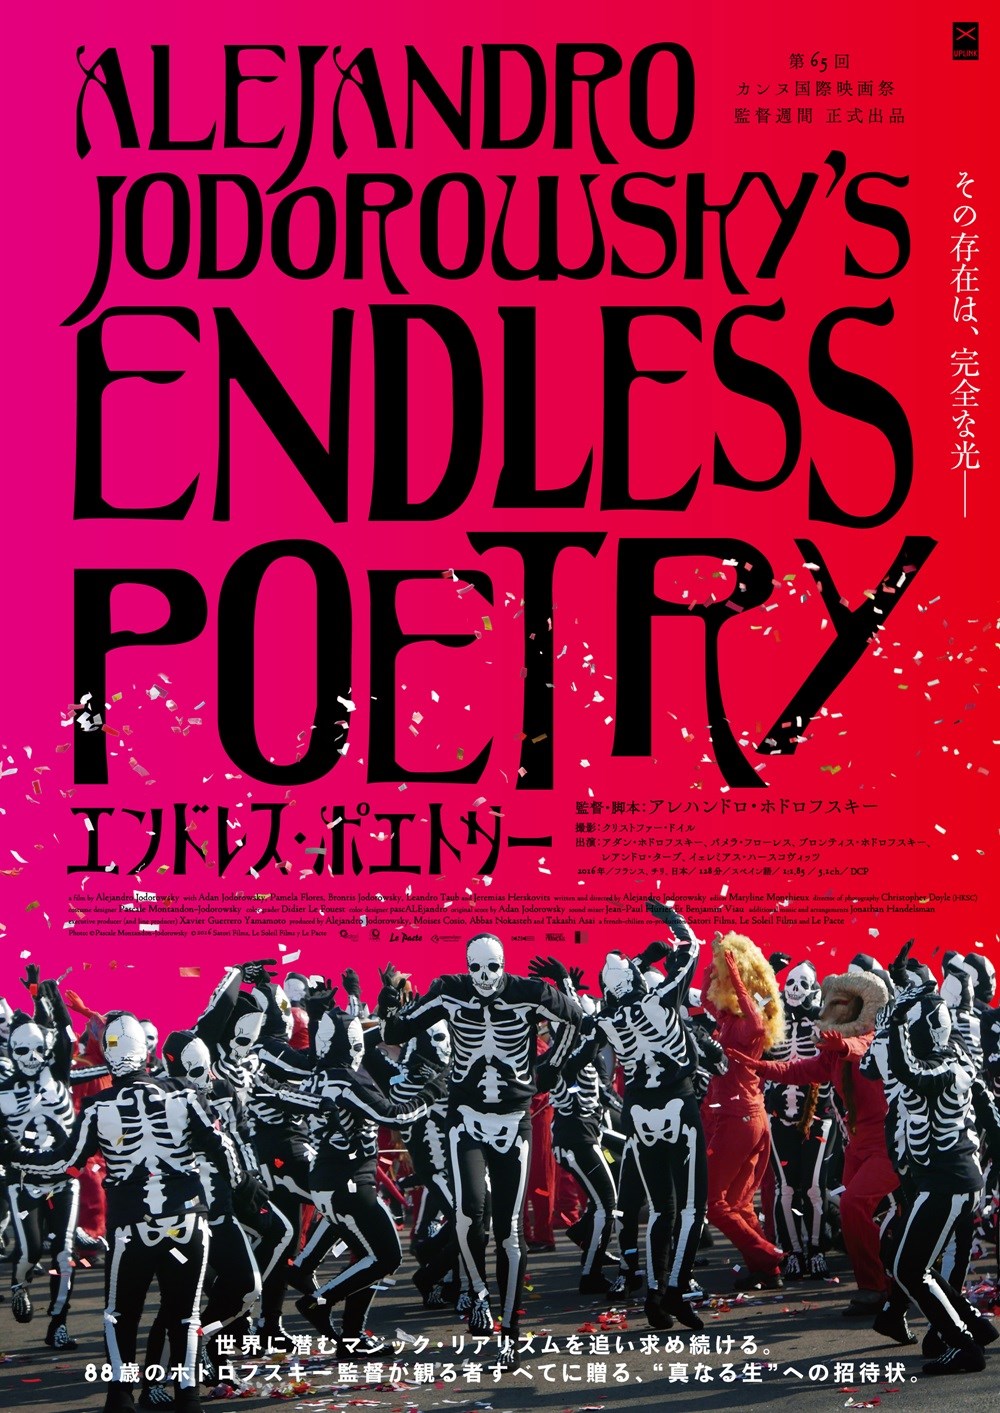 【画像】映画『エンドレス・ポエトリー』(Endless Poetry/Poesia Sin Fin)